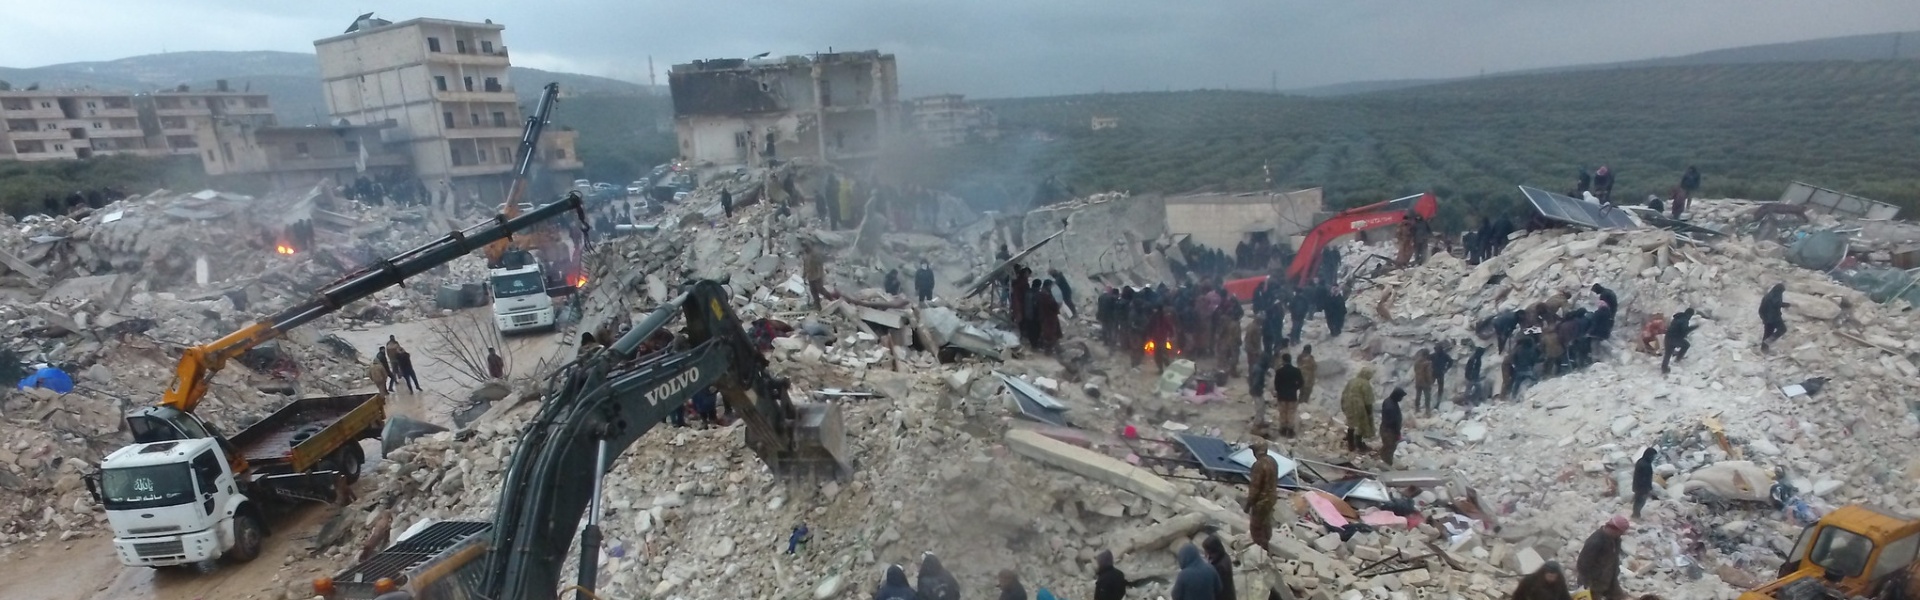 Erdbeben erschüttert Türkei und Syrien